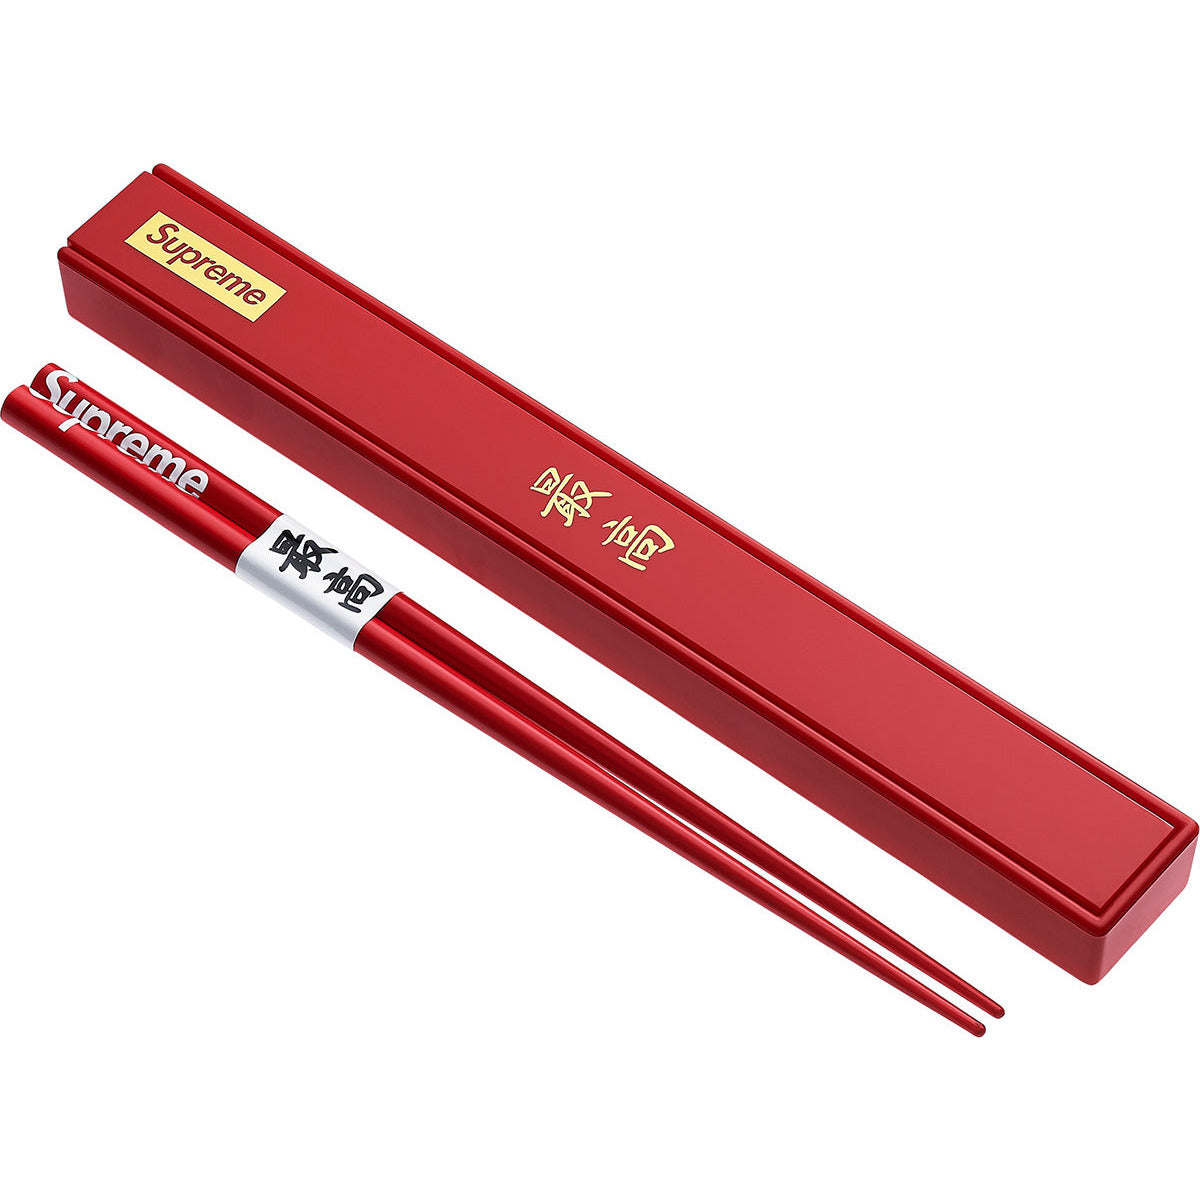 Supreme Chopsticks from Supreme